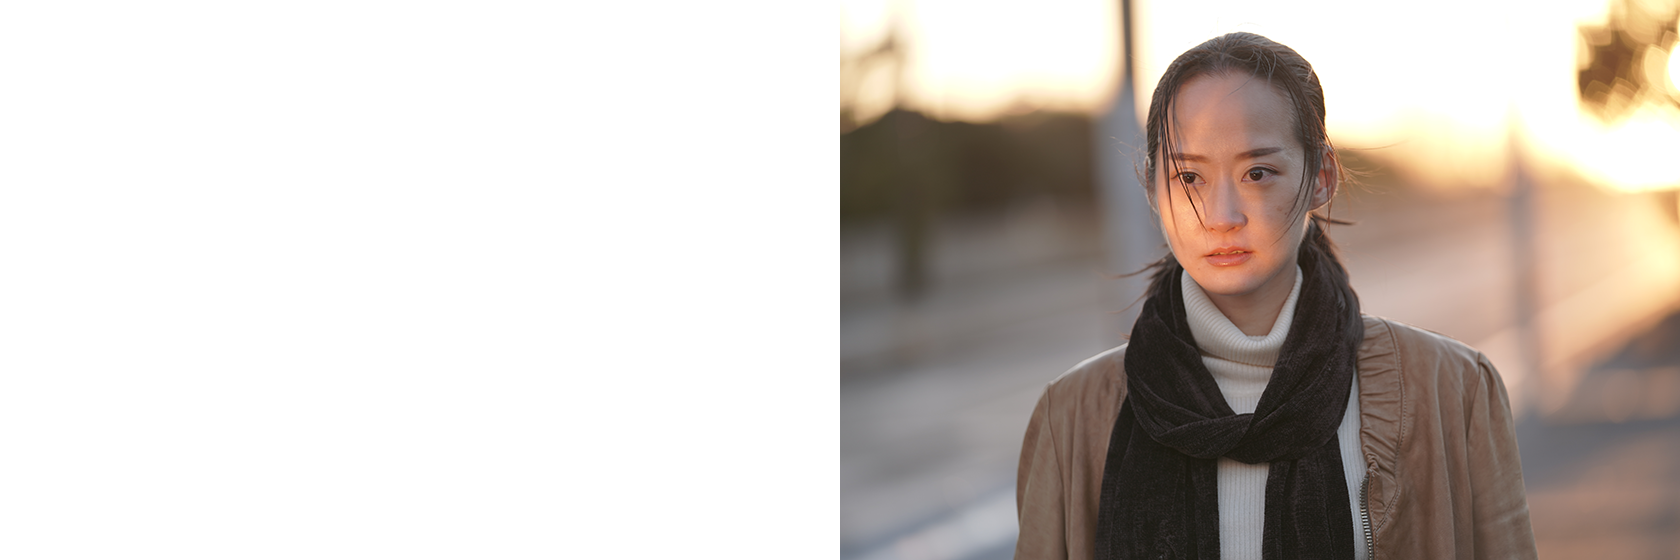 佐藤里穂（薊役）1990年12月18日生まれ。東京都出身。2011年にモデルデビュー、2015年からは俳優として活動。『背中』（22/越川道夫監督）で映画初主演。その他近年の出演作に、『曲がり屋の恋』（21/増田嵩虎監督）『福田村事件』（23/森達也監督）などがある。